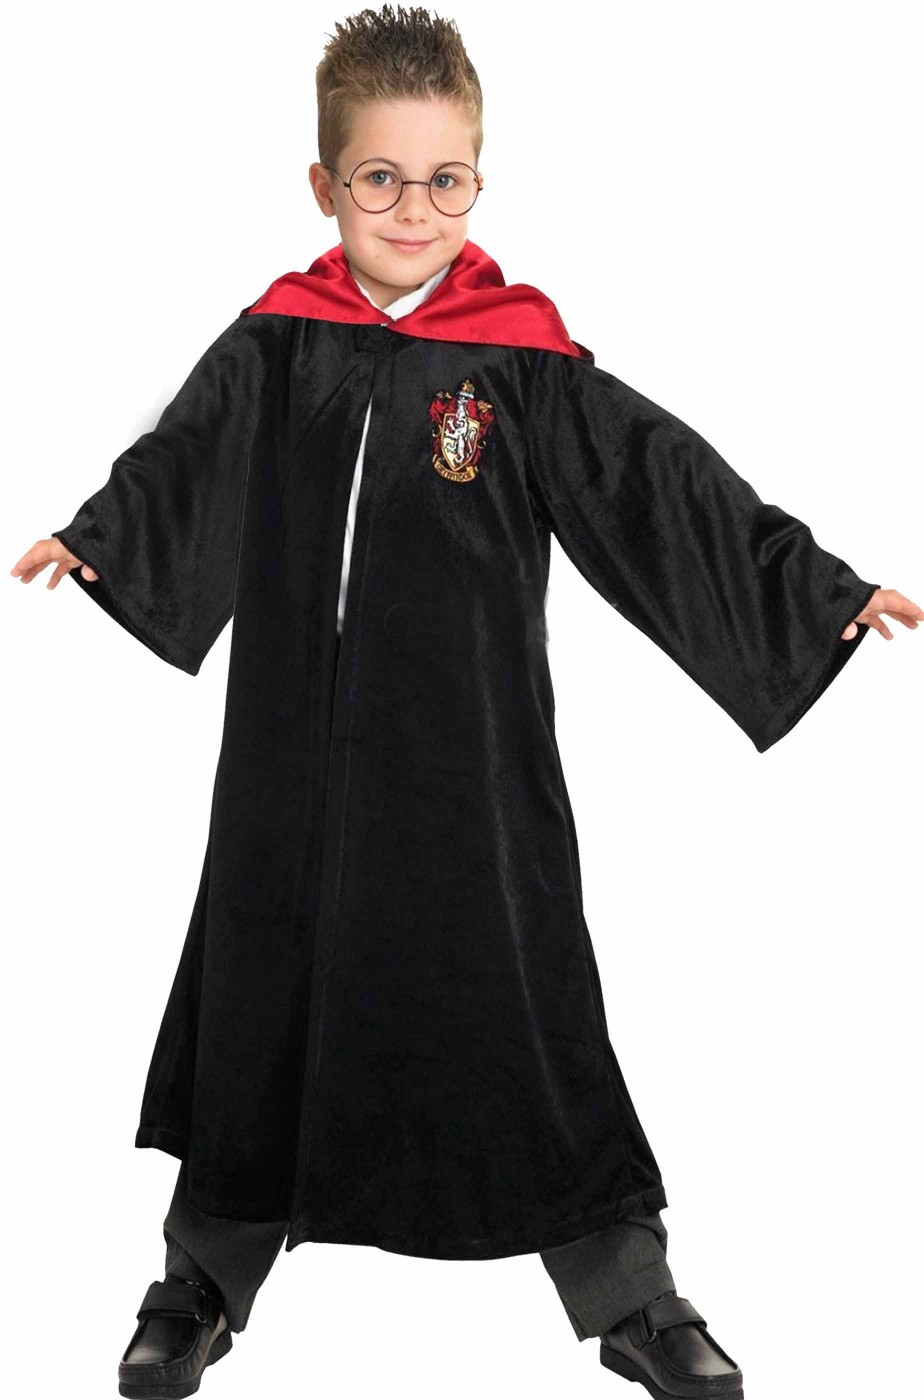 Costume Harry Potter Grifondoro per bambini. Have fun! Funidelia